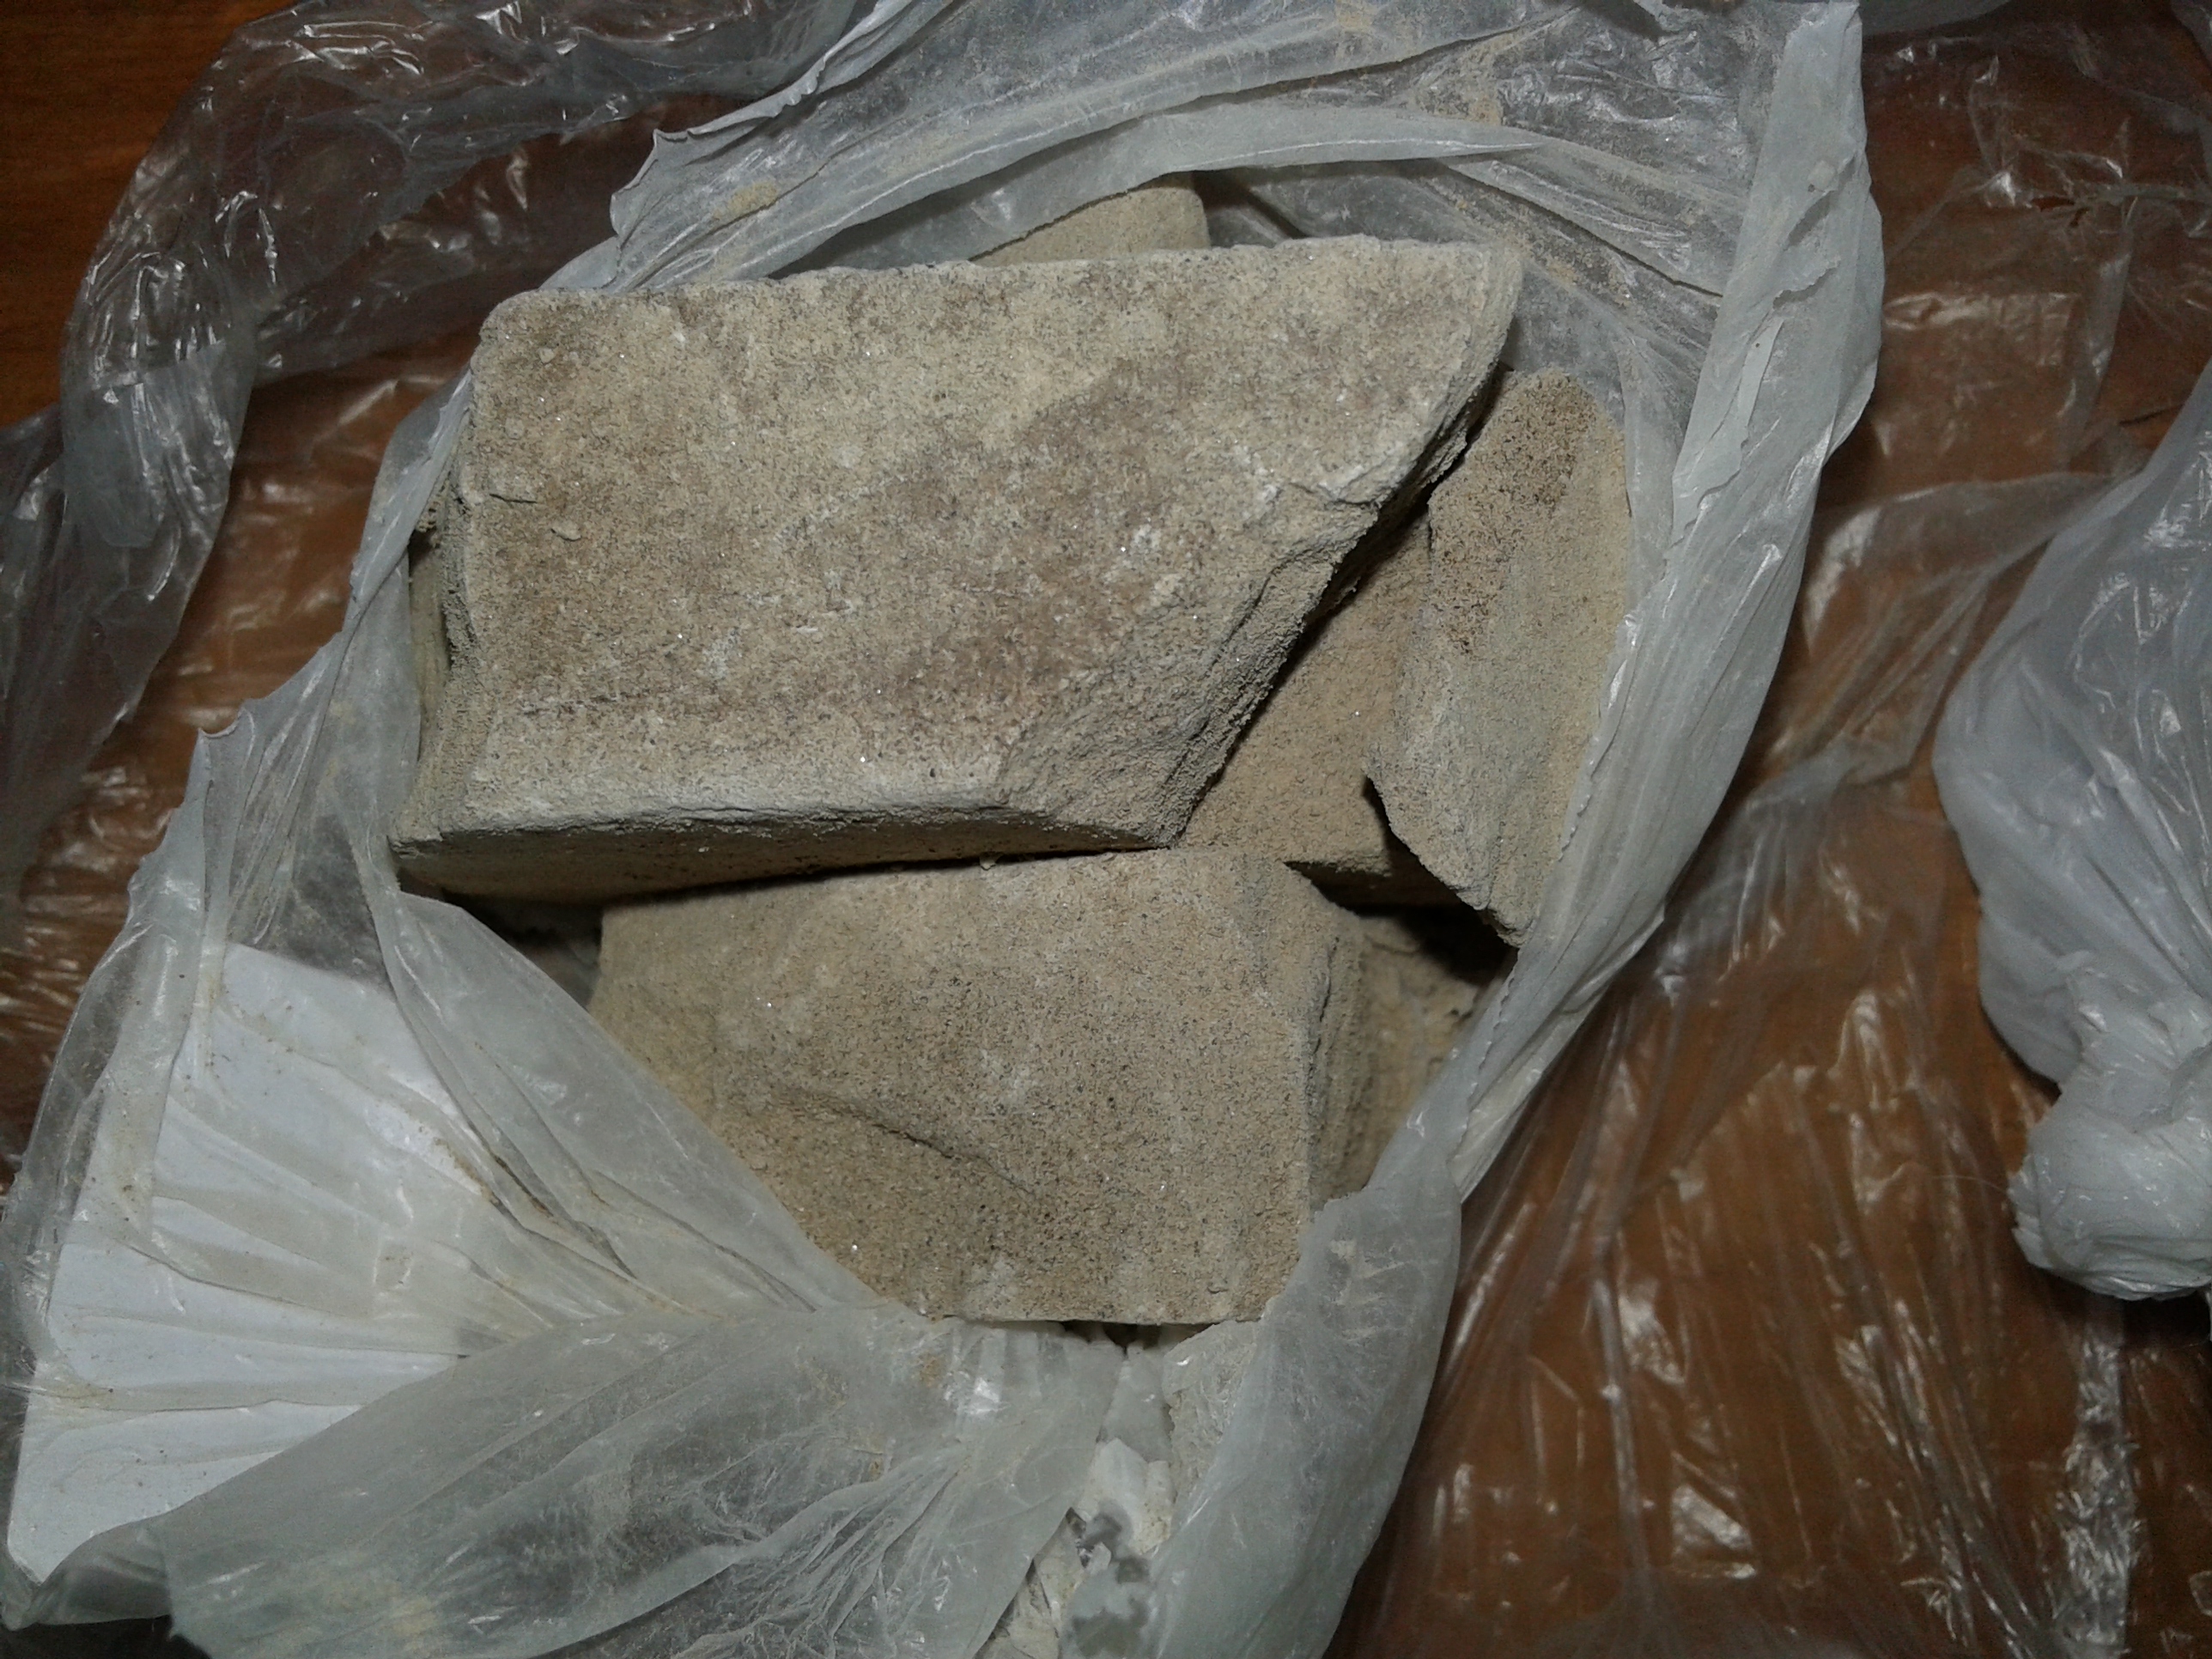 Πάνω από 300 γραμ ηρωίνης σε “βράχο” είχαν στην κατοχή τους! (φωτο)